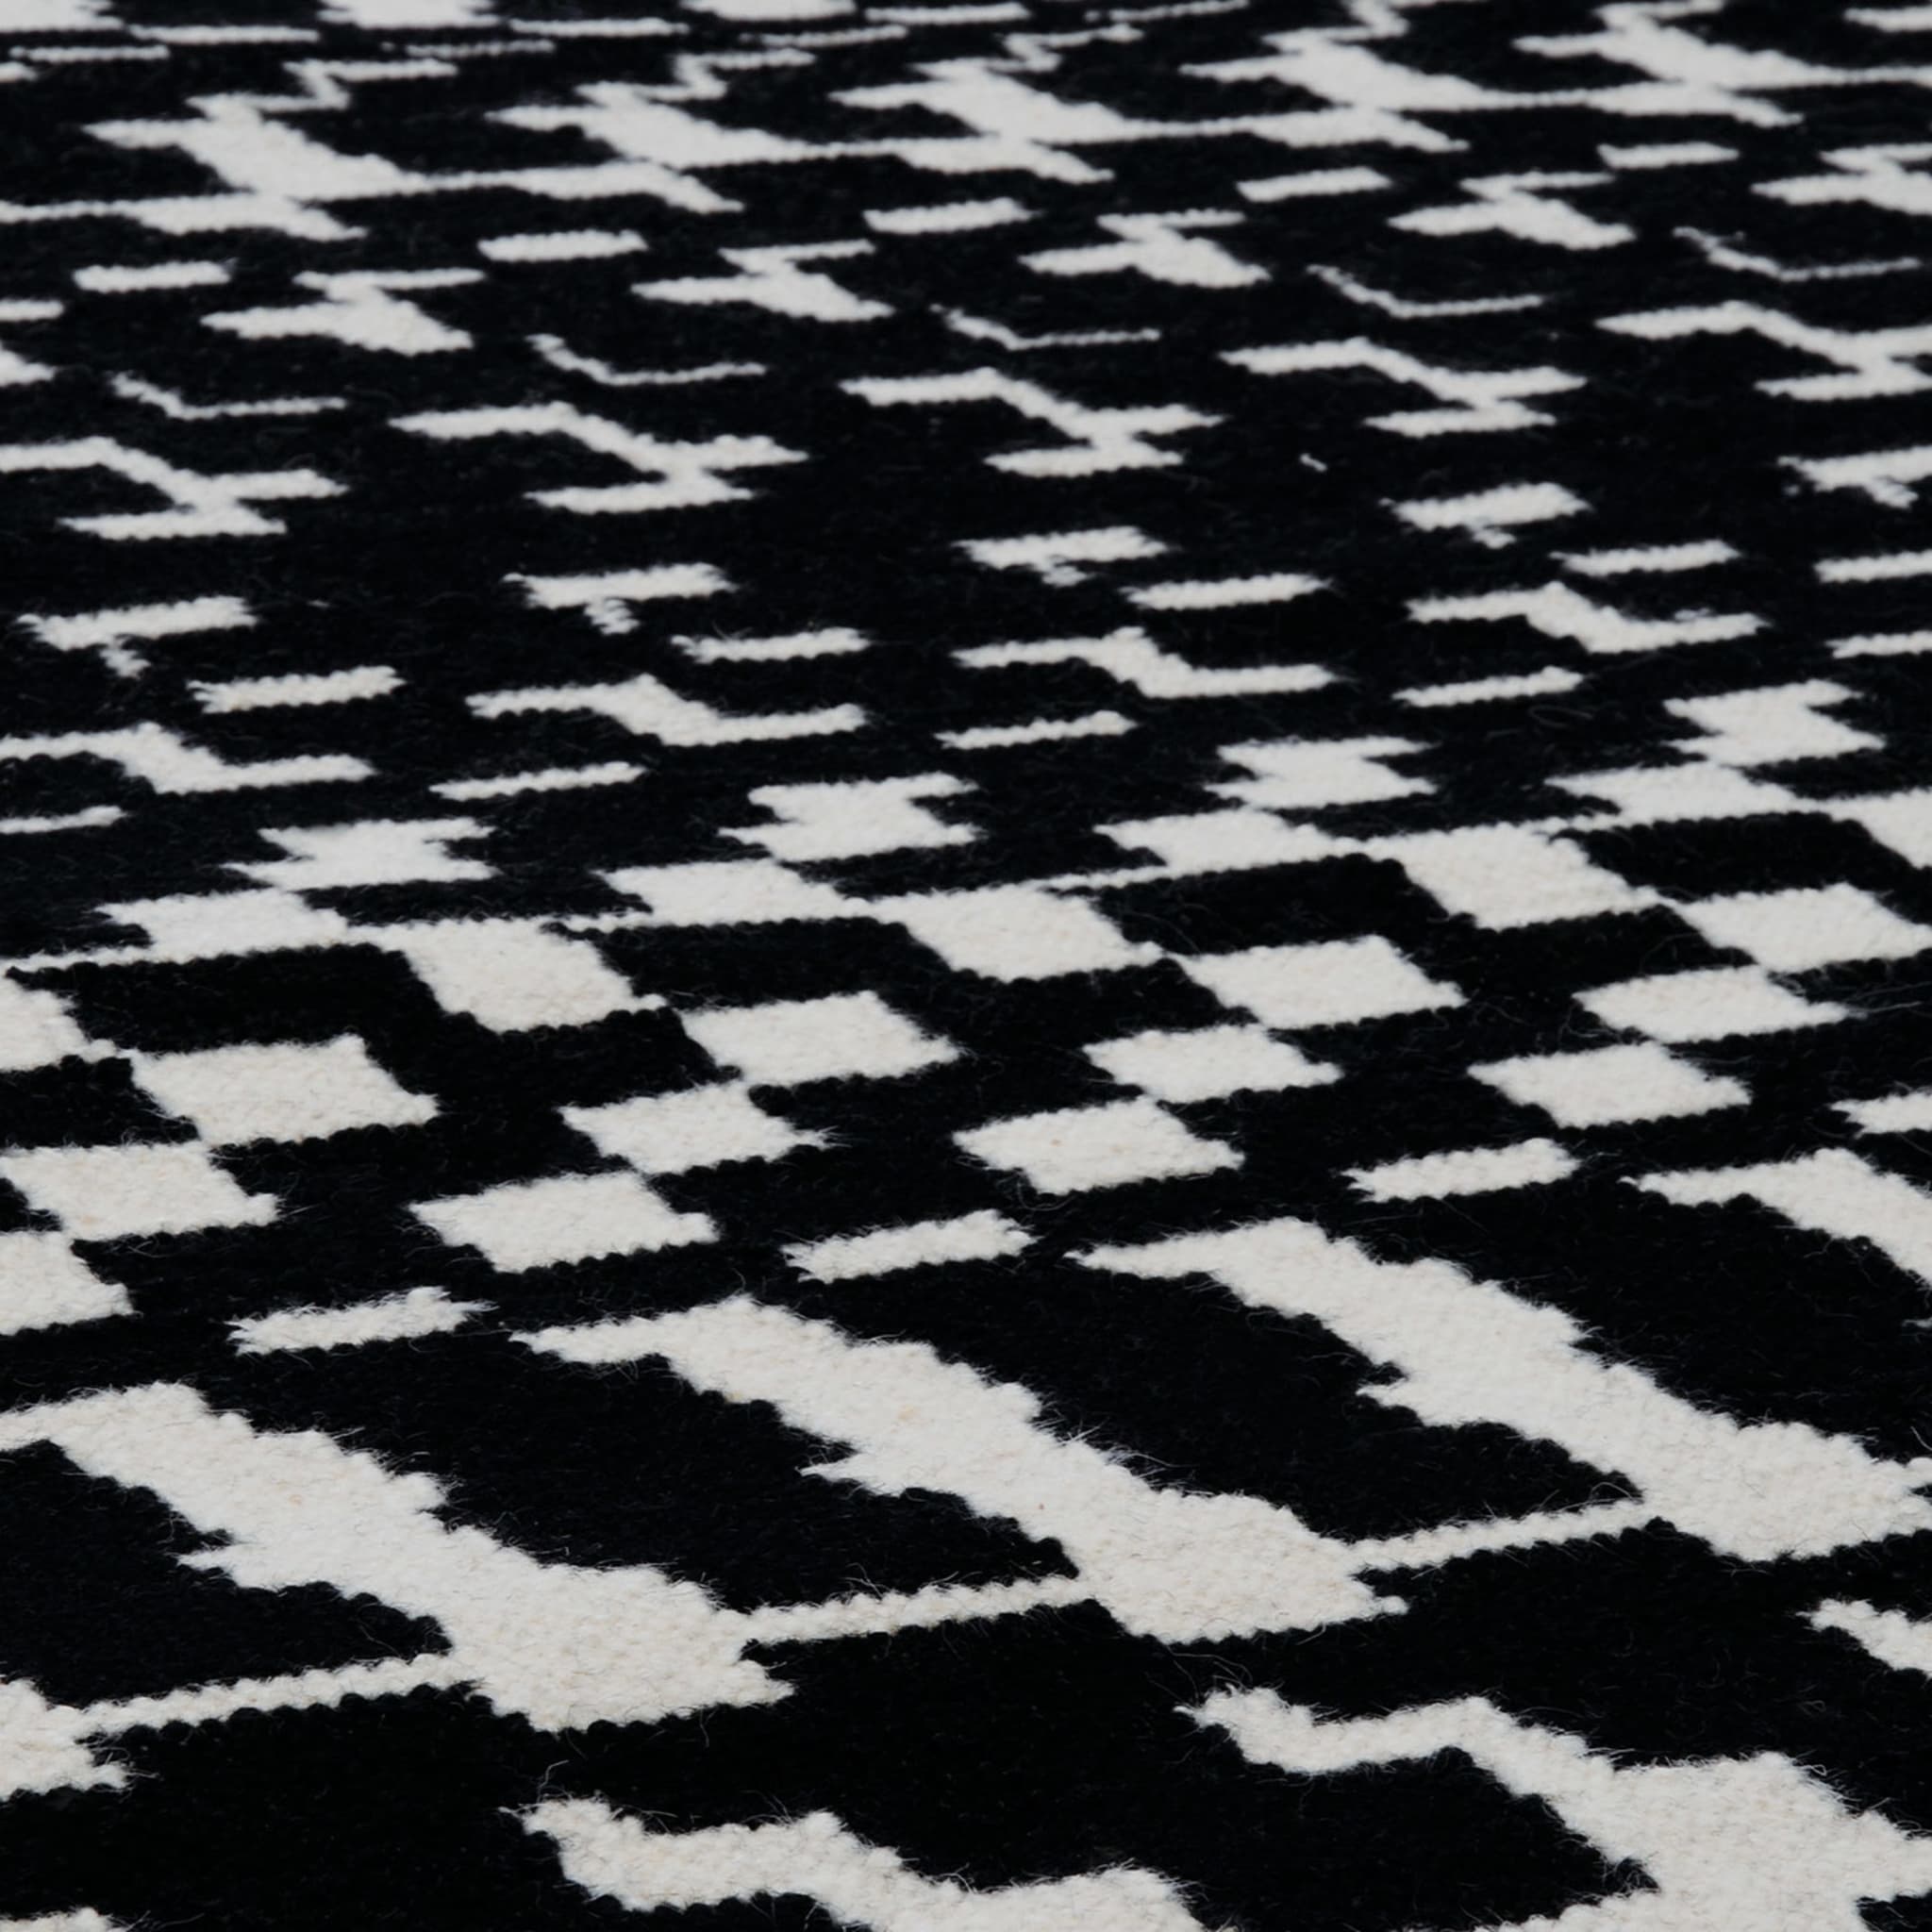 Fuoritempo Black & White Large Carpet - Alternative view 1